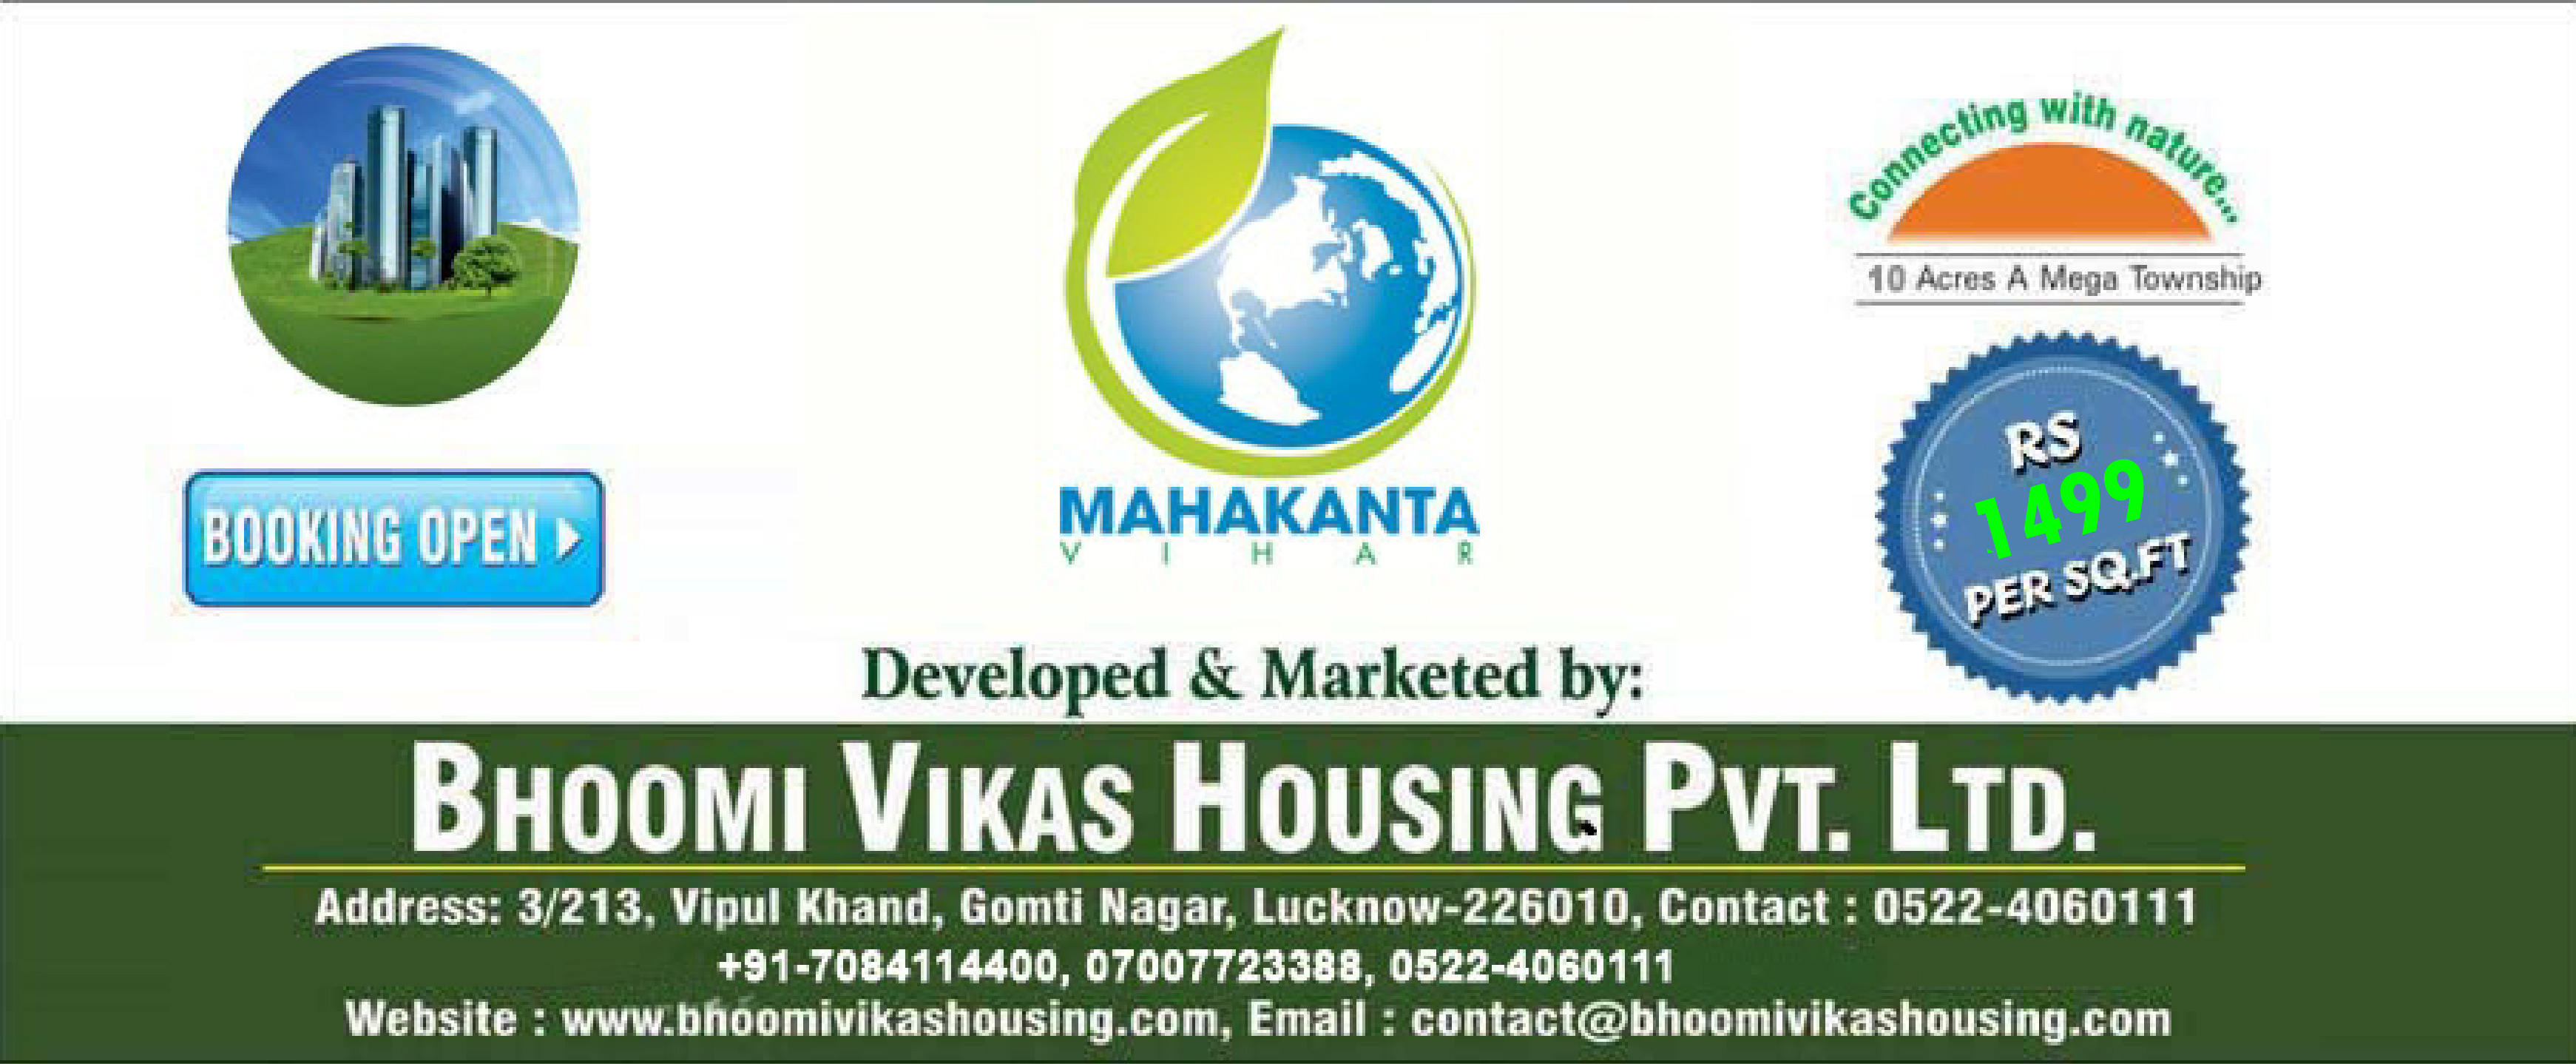 Bhoomi Vikas Housing Pvt. Ltd.